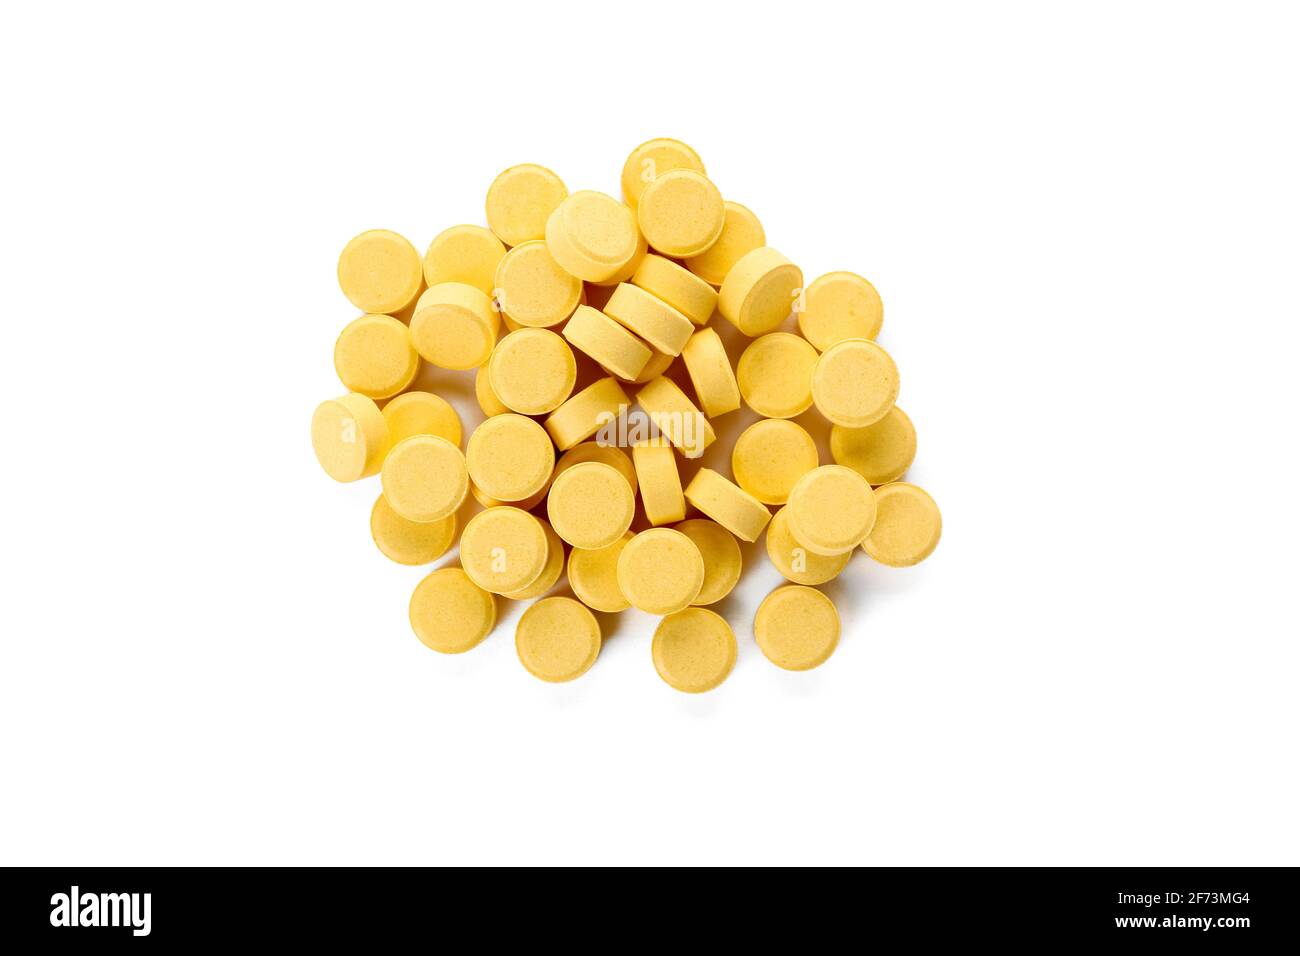 Folic acid pills on white background Stock Photo